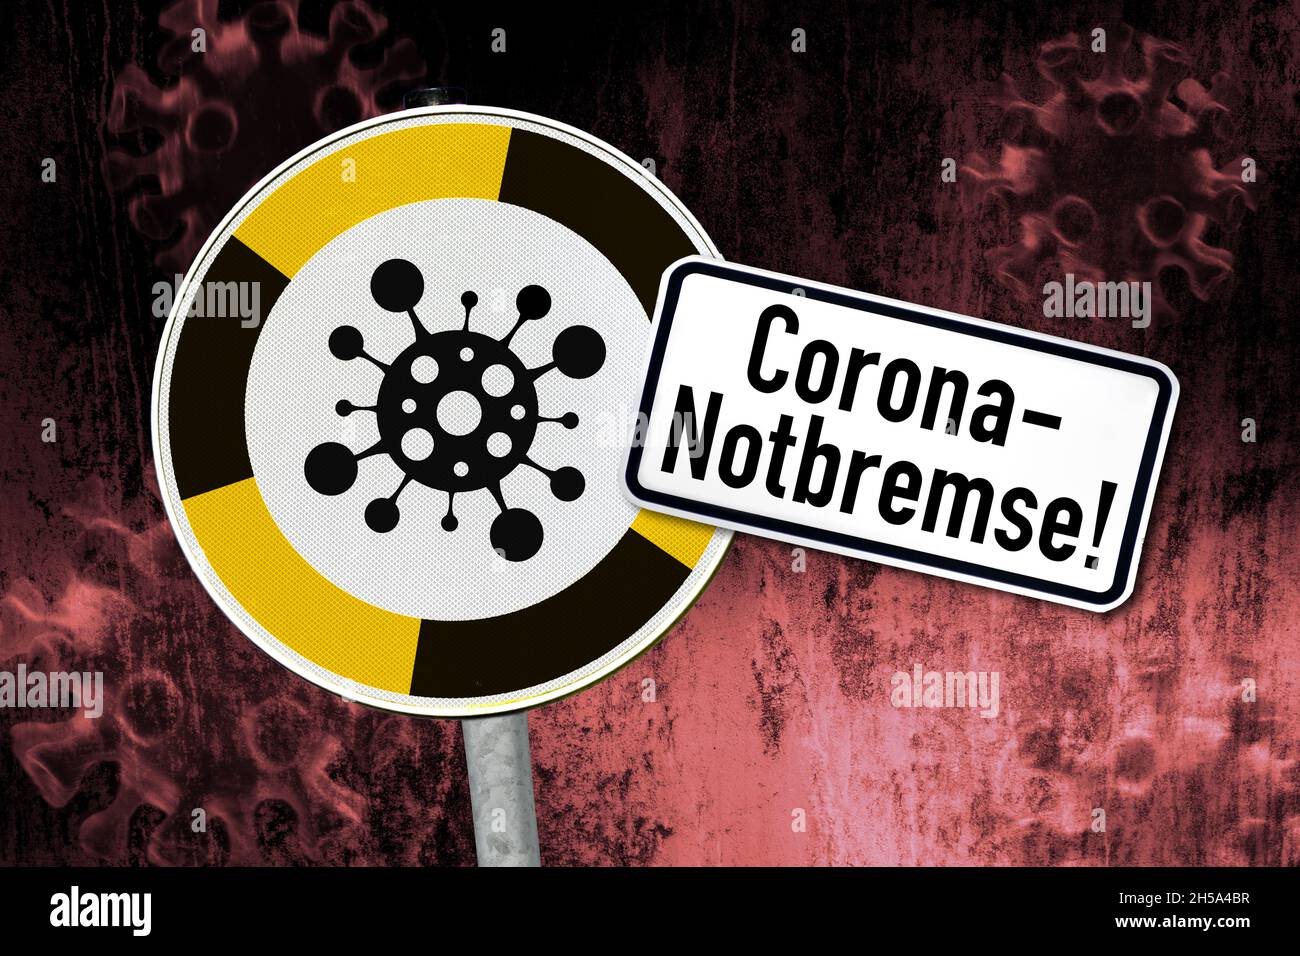 FTOMONTAGE, Schild mit Coronavirus-Symbol und Aufschrift Corona-Nobbremse Foto Stock